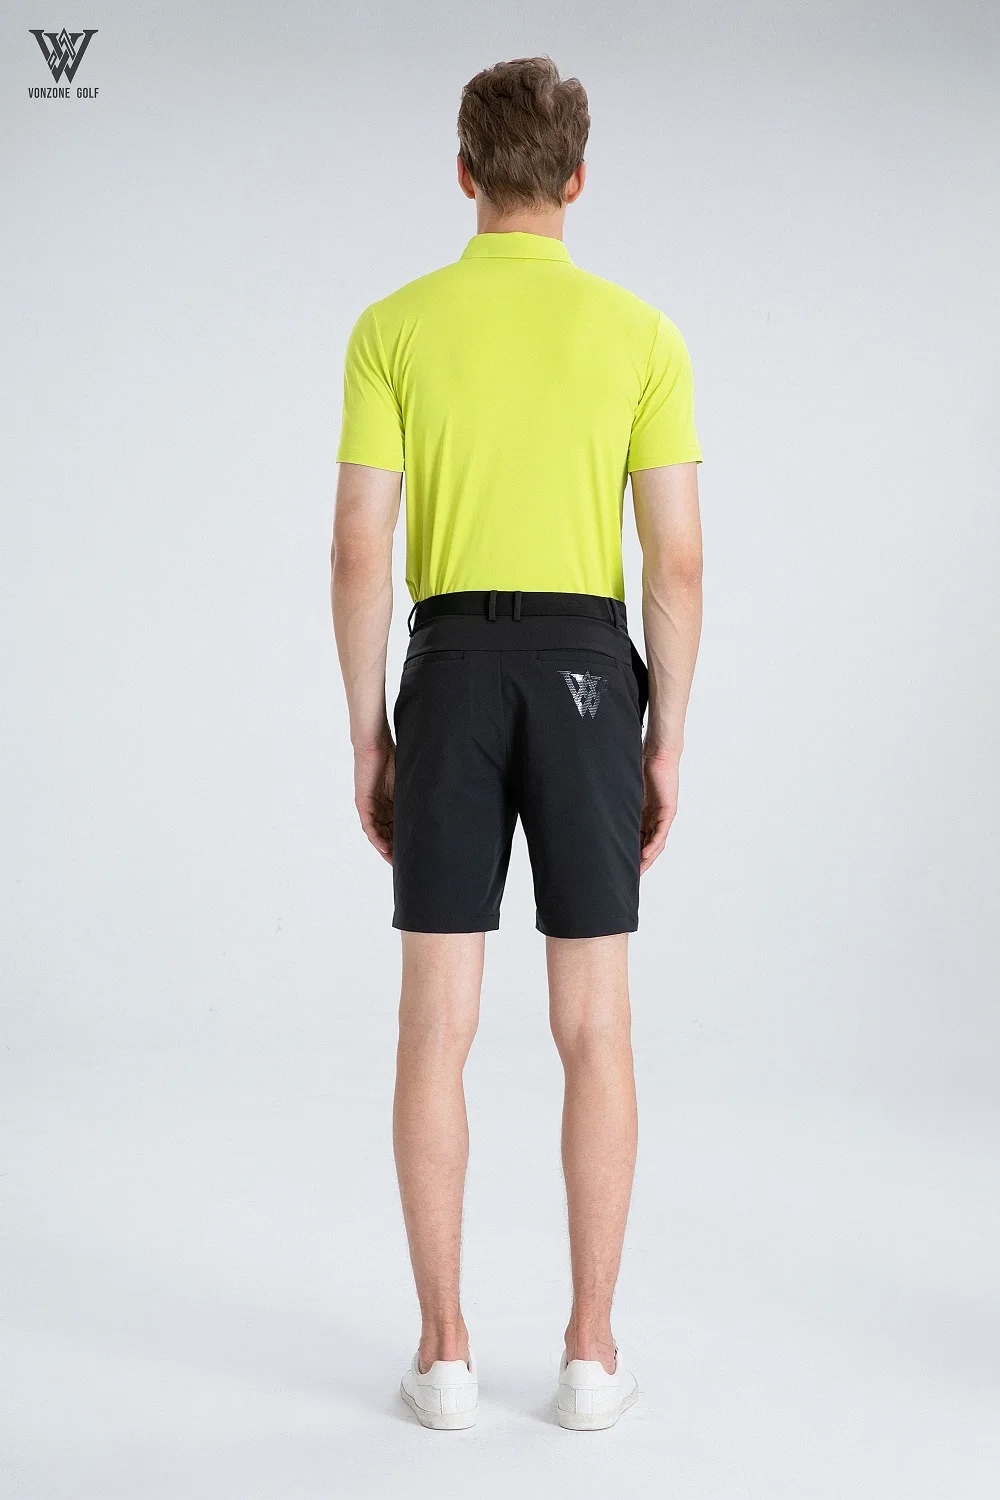 2023 новая спортивная одежда для гольфа, мужская футболка для гольфа, удобная, дышащая, быстросохнущая футболка для гольфа с коротким рукавом . ' - ' . 1